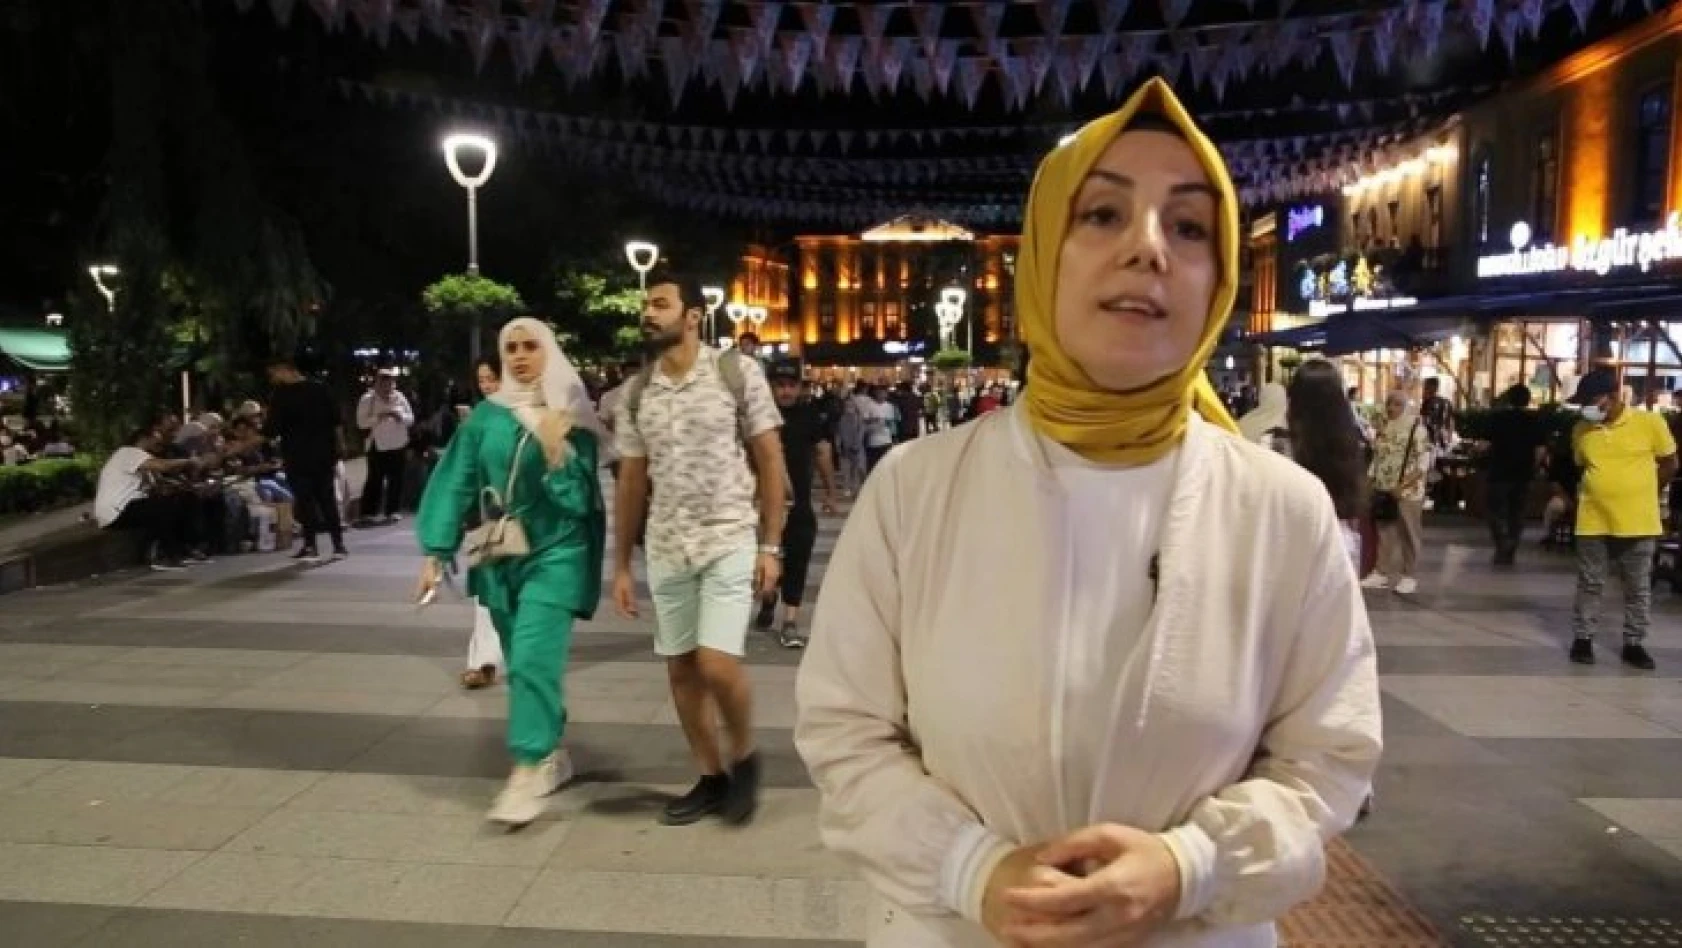 Arap turistleri hedefe koyan sosyal medya paylaşımlarına tepki gösterdi